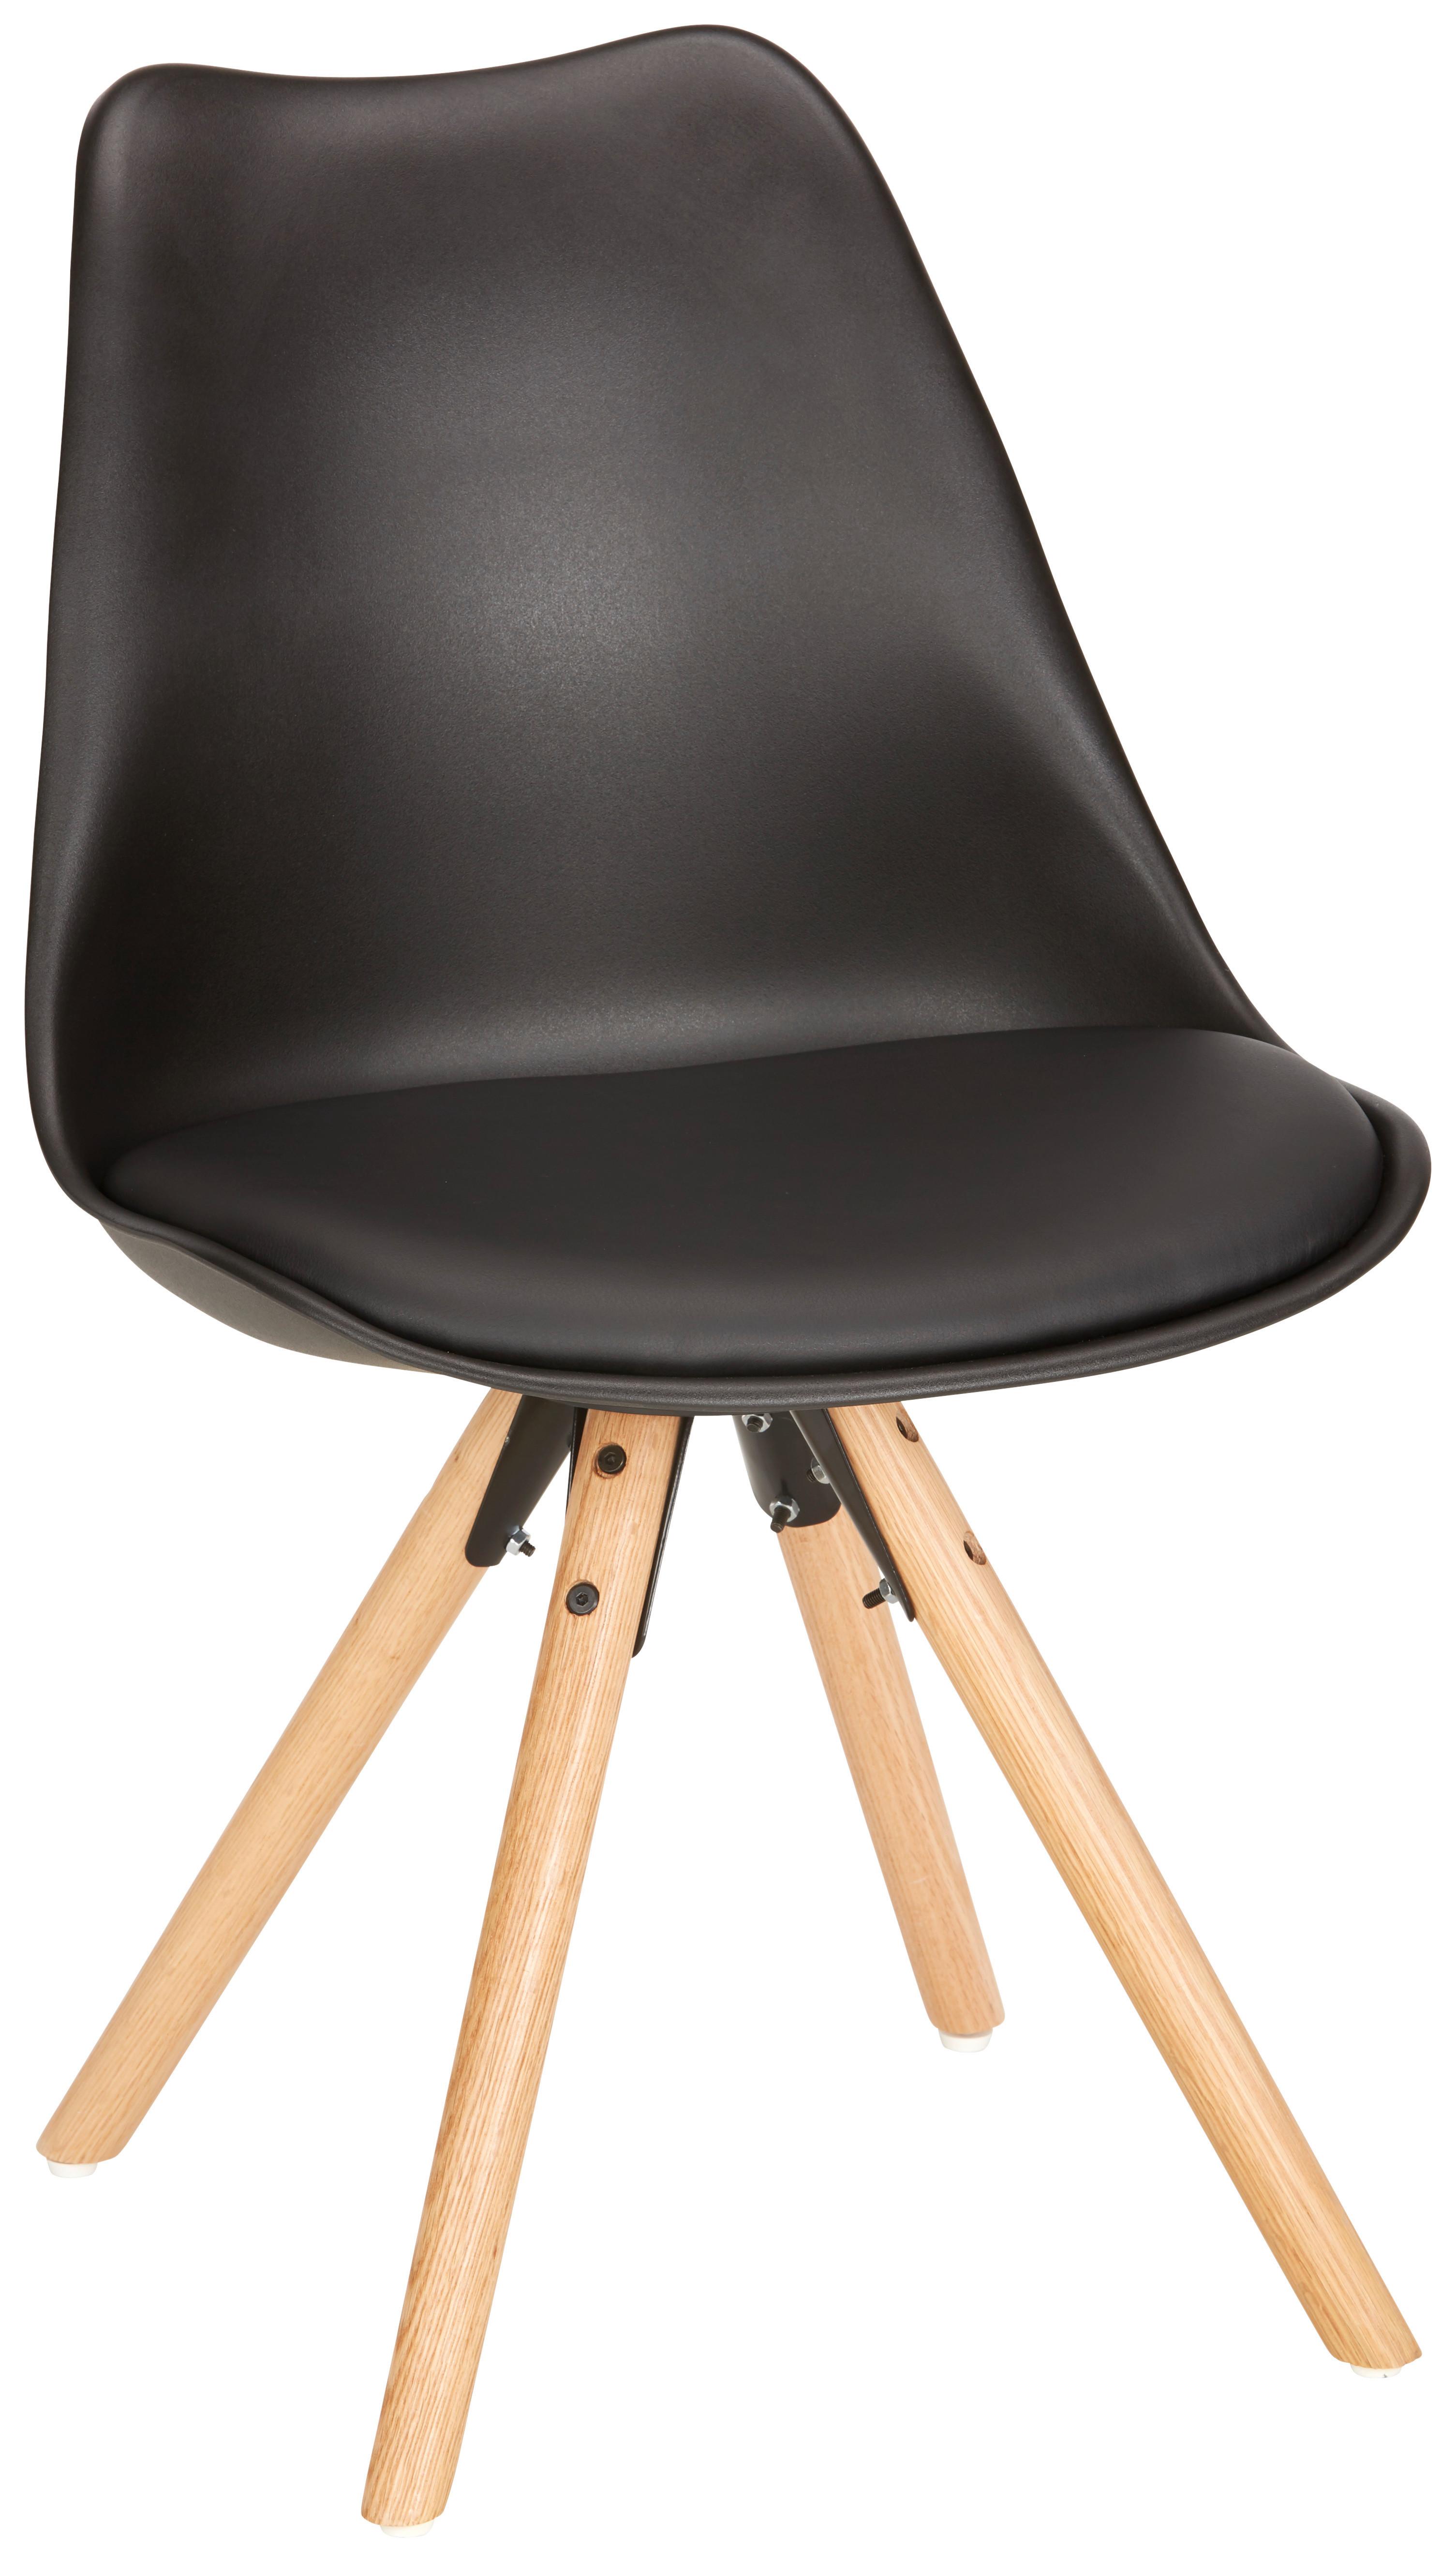 Jídelní Židle Lilly S Dřevěnýma Nohama, Černá - černá/barvy dubu, Moderní, dřevo/plast (48/81/57cm) - Modern Living